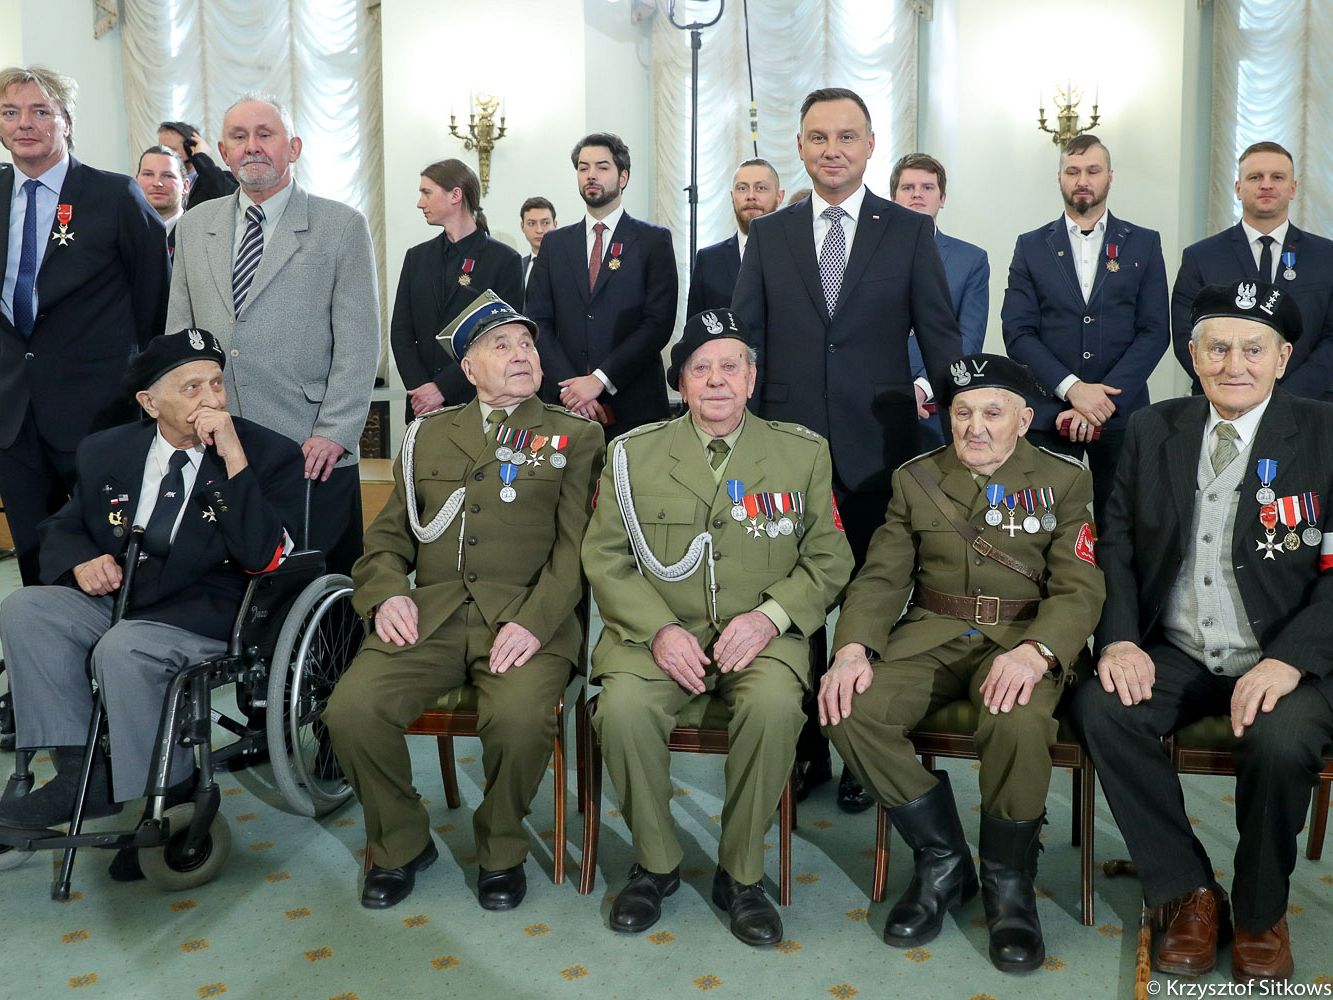 Prezydent Andrzej Duda wraz z odznaczonymi i weteranami (Stefan Kownacki – drugi od prawej w pierwszym rzędzie).